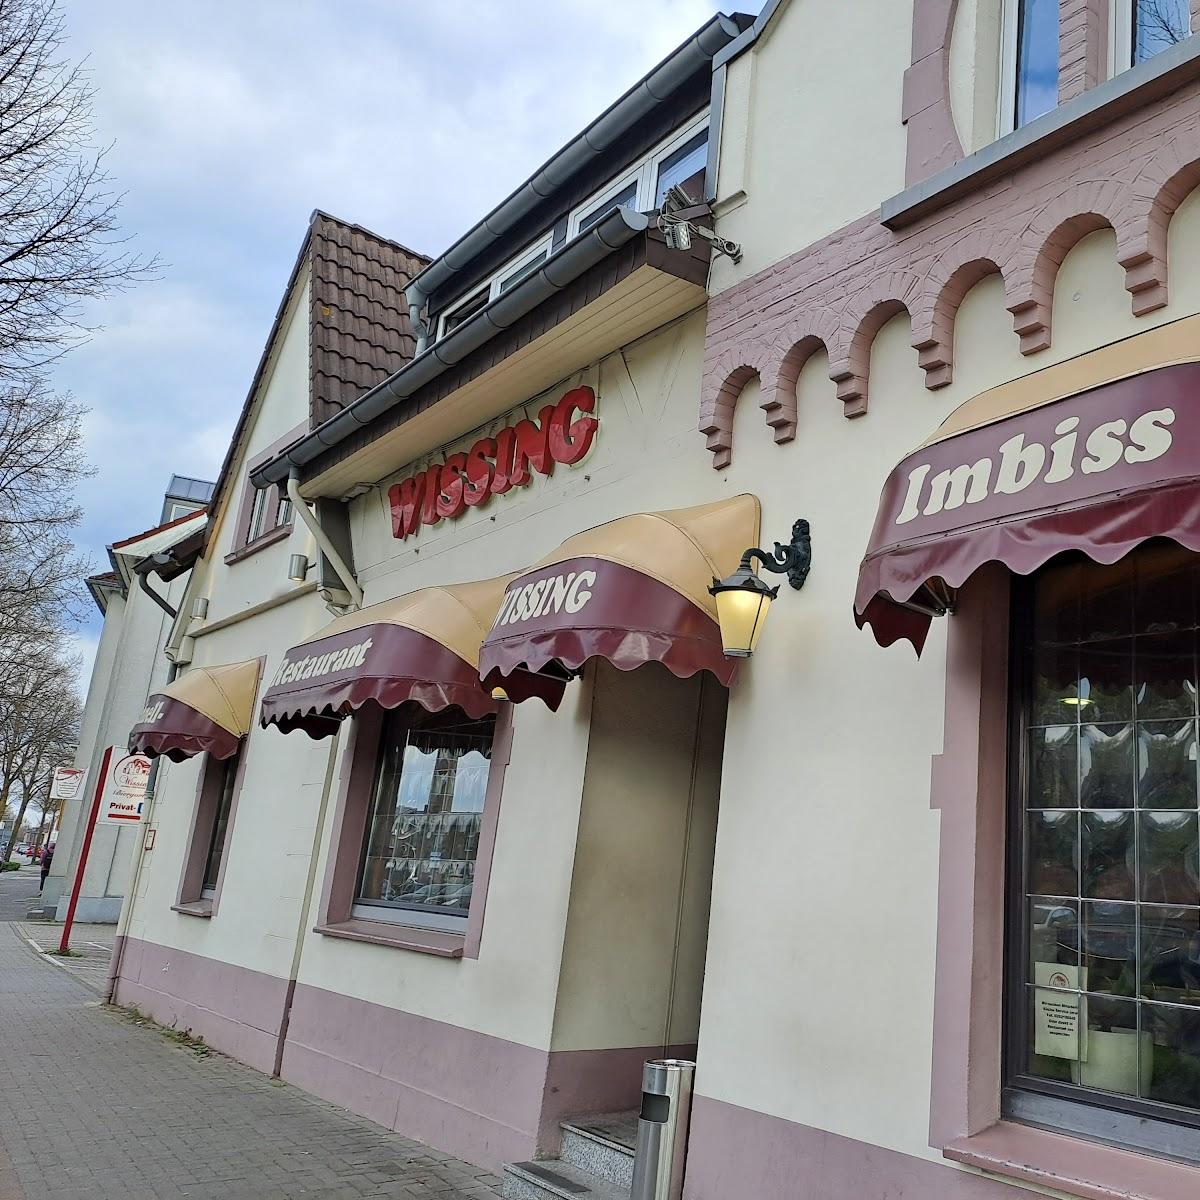 Restaurant "Schnellrestaurant Wissing" in Kleve